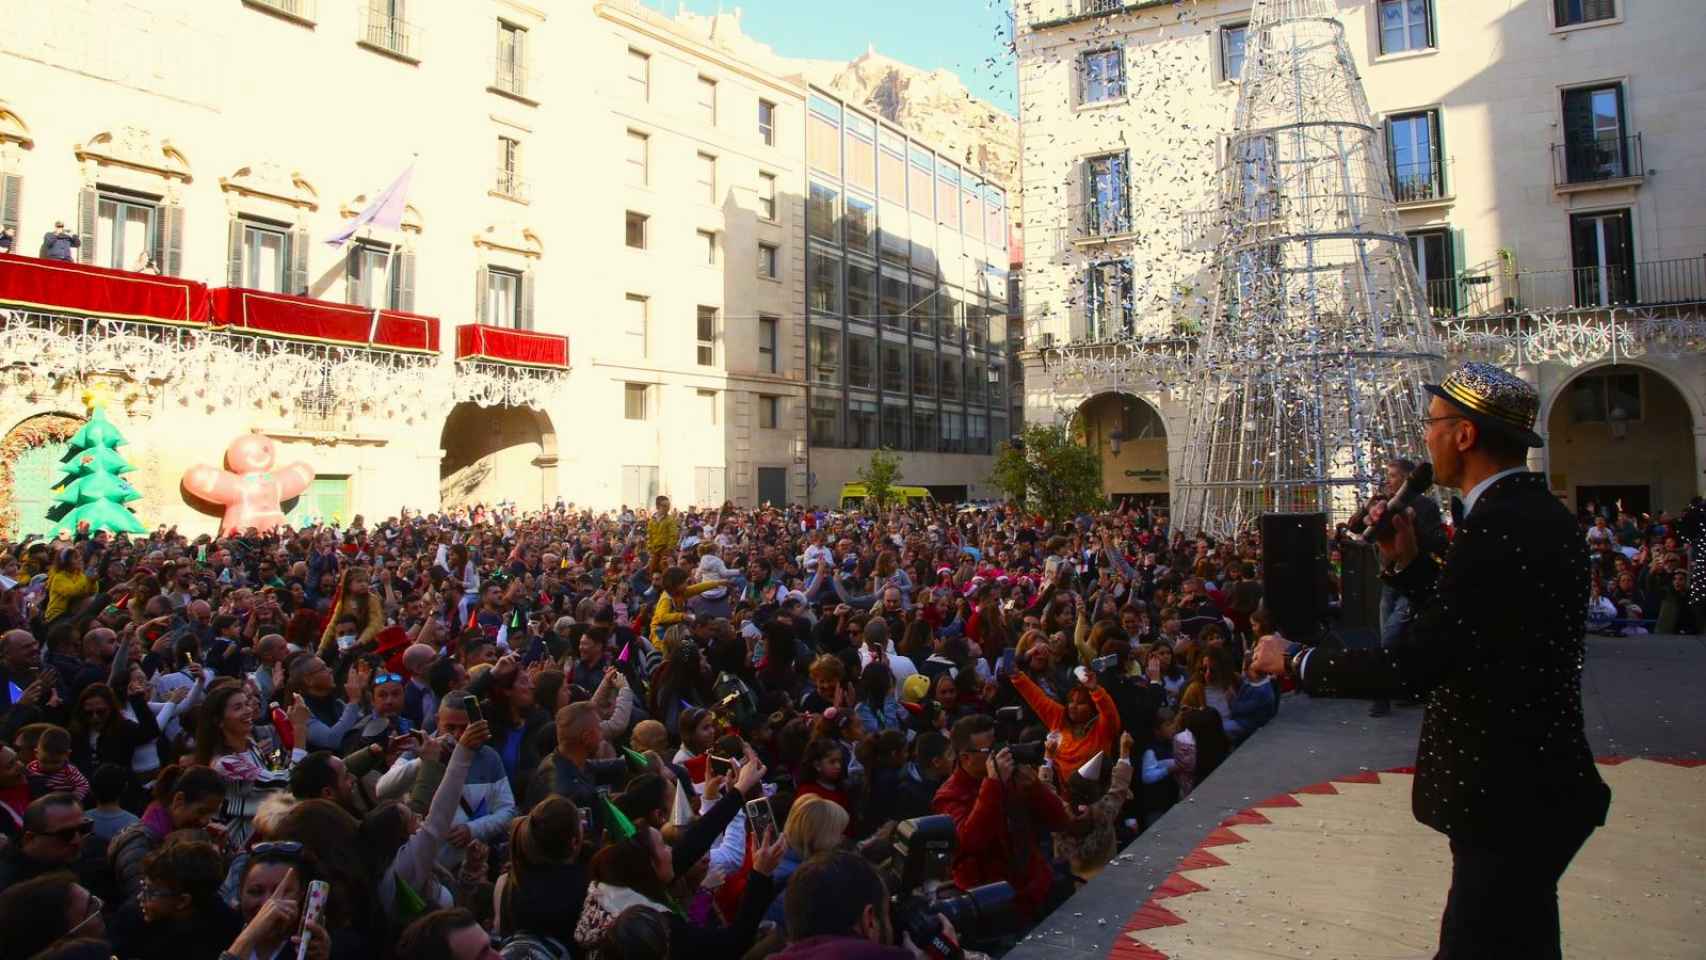 El cotillón infantil despide el año celebrando las doce campanadas del mediodía en Alicante.